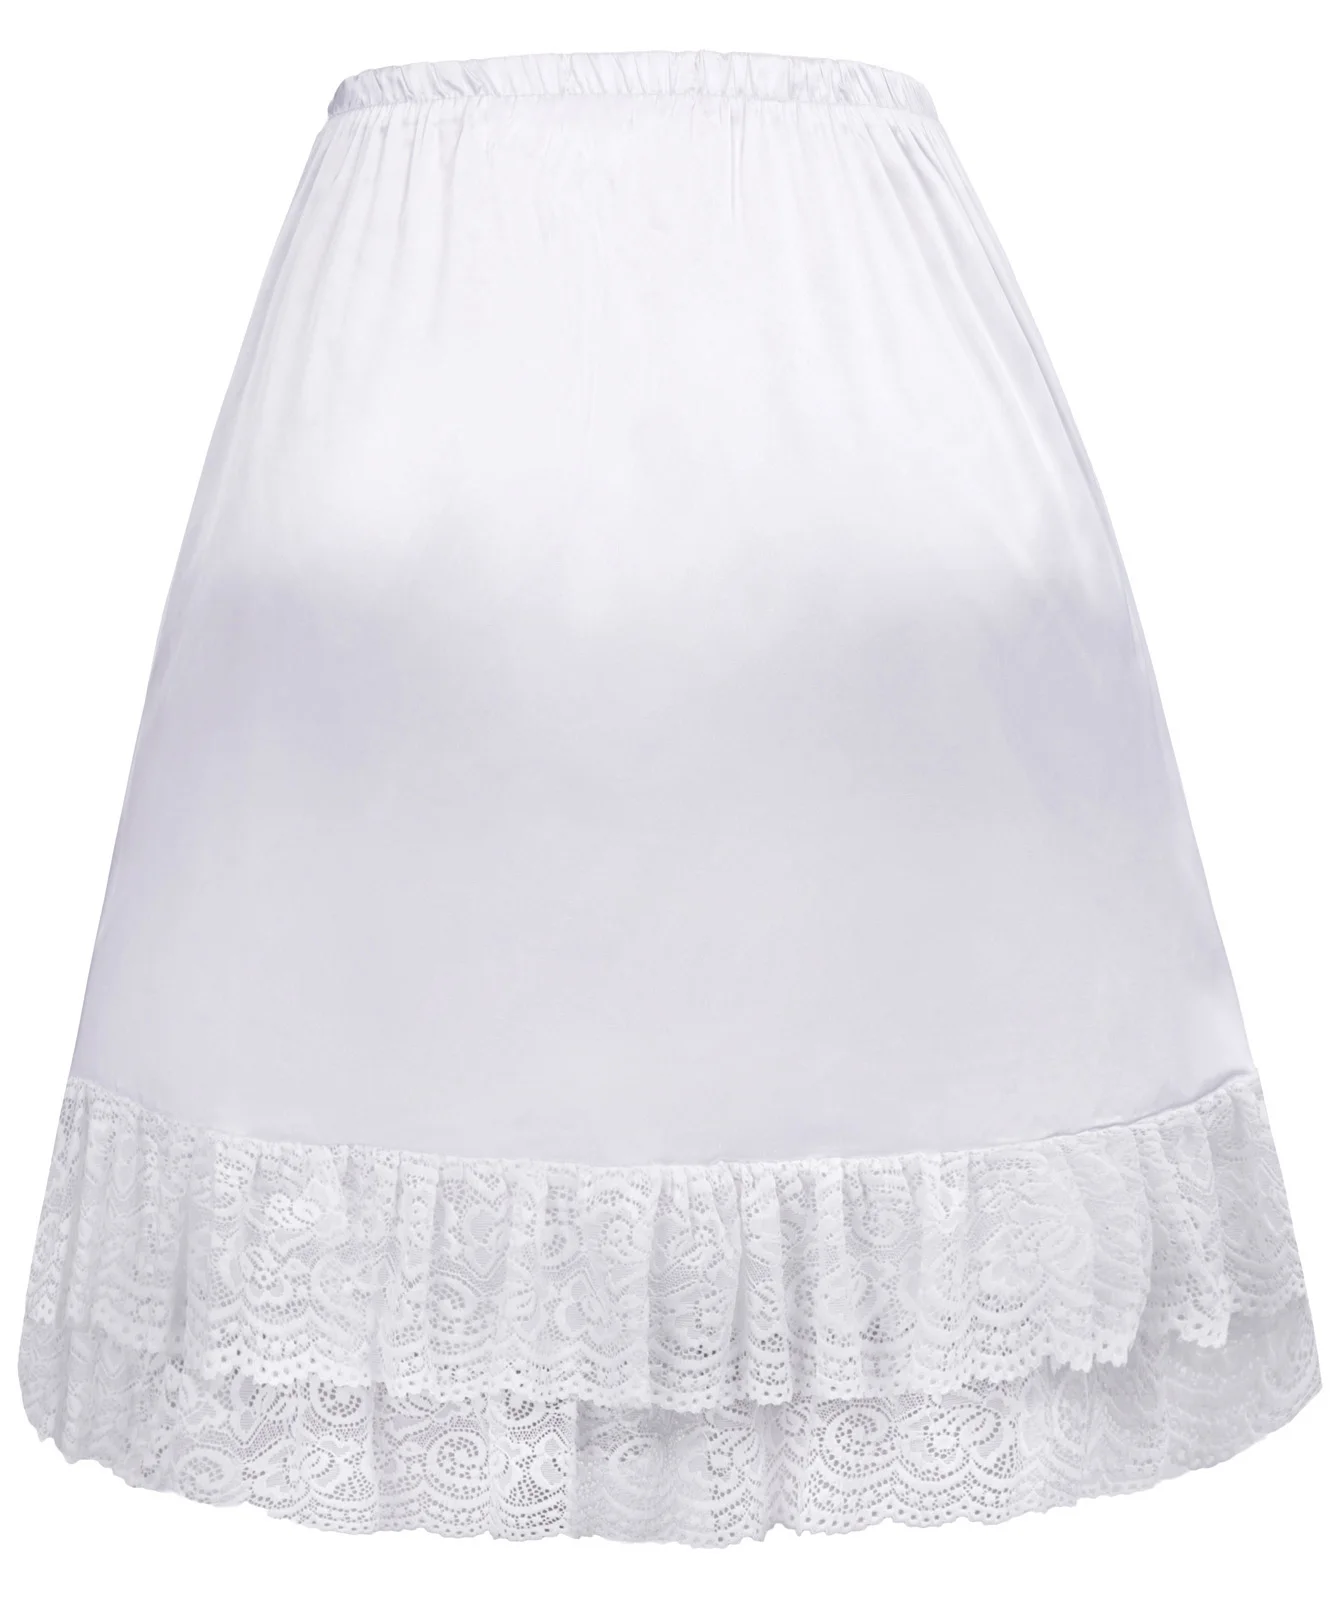 GK сплошной цвет Для женщин юбка основная гладкая и удобная одежда с кружевной отделкой из сатина с высокой талией юбка с длиной до колена